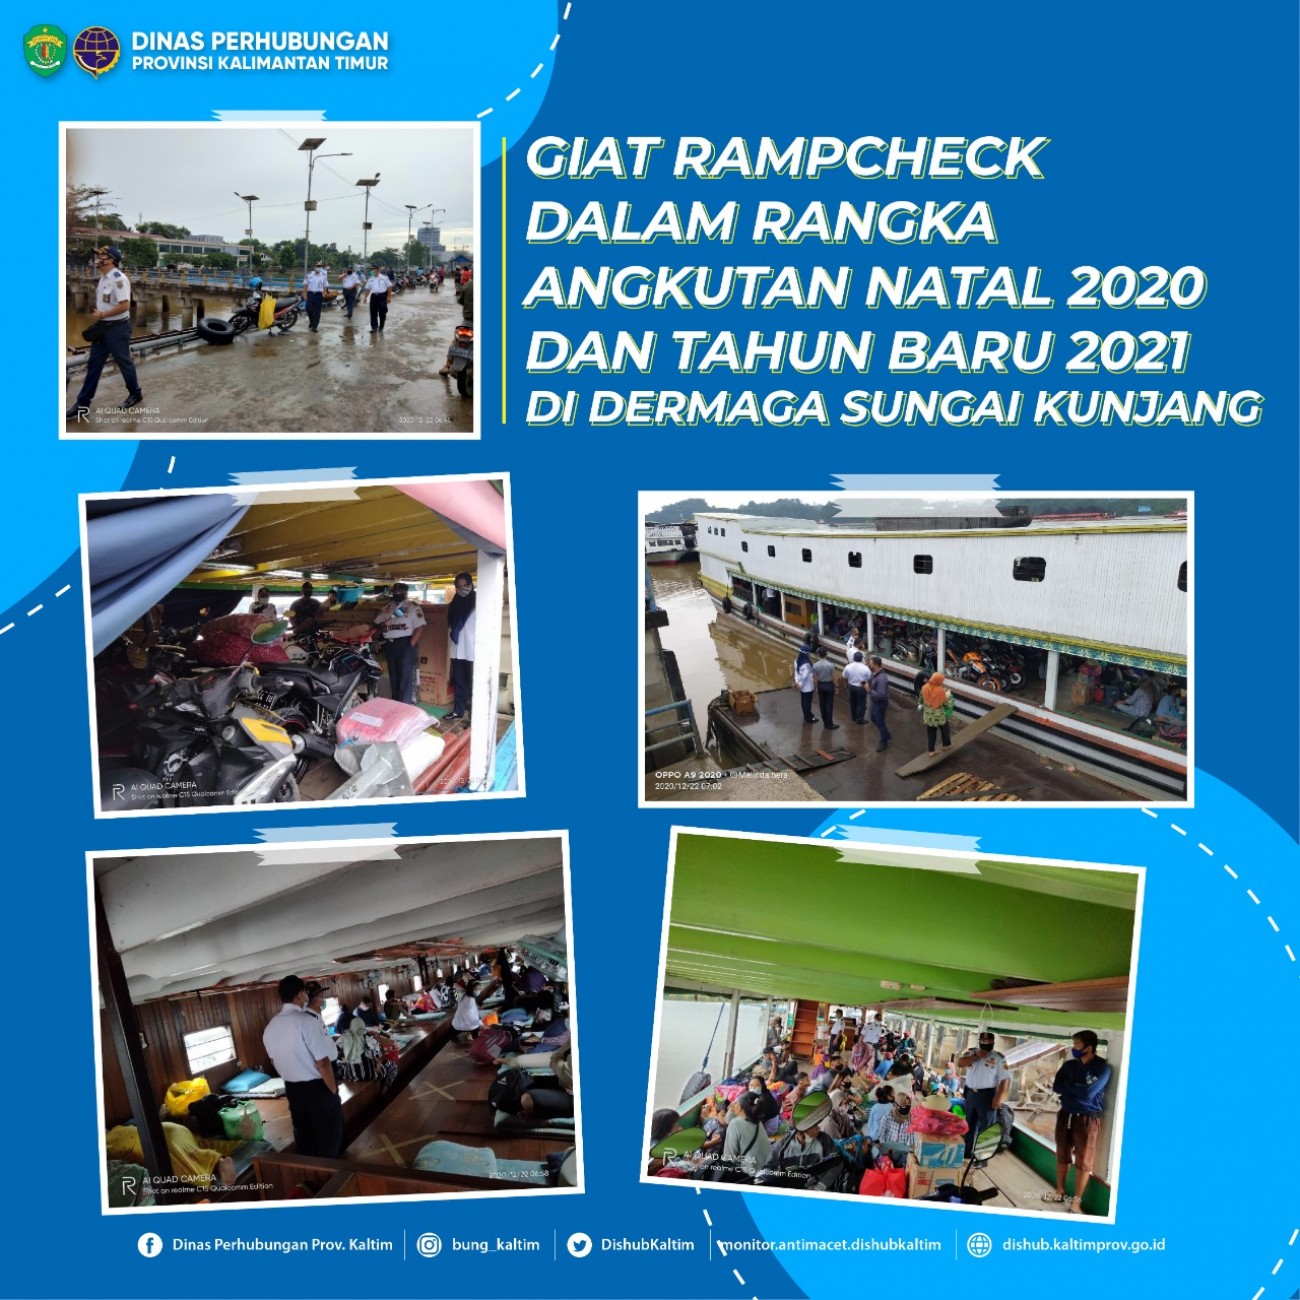 Giat Ramp Check Dalam Rangka Angkutan Natal 2020 Dan Tahun Baru 2021 Di Dermaga Sungai Kunjang Samarinda